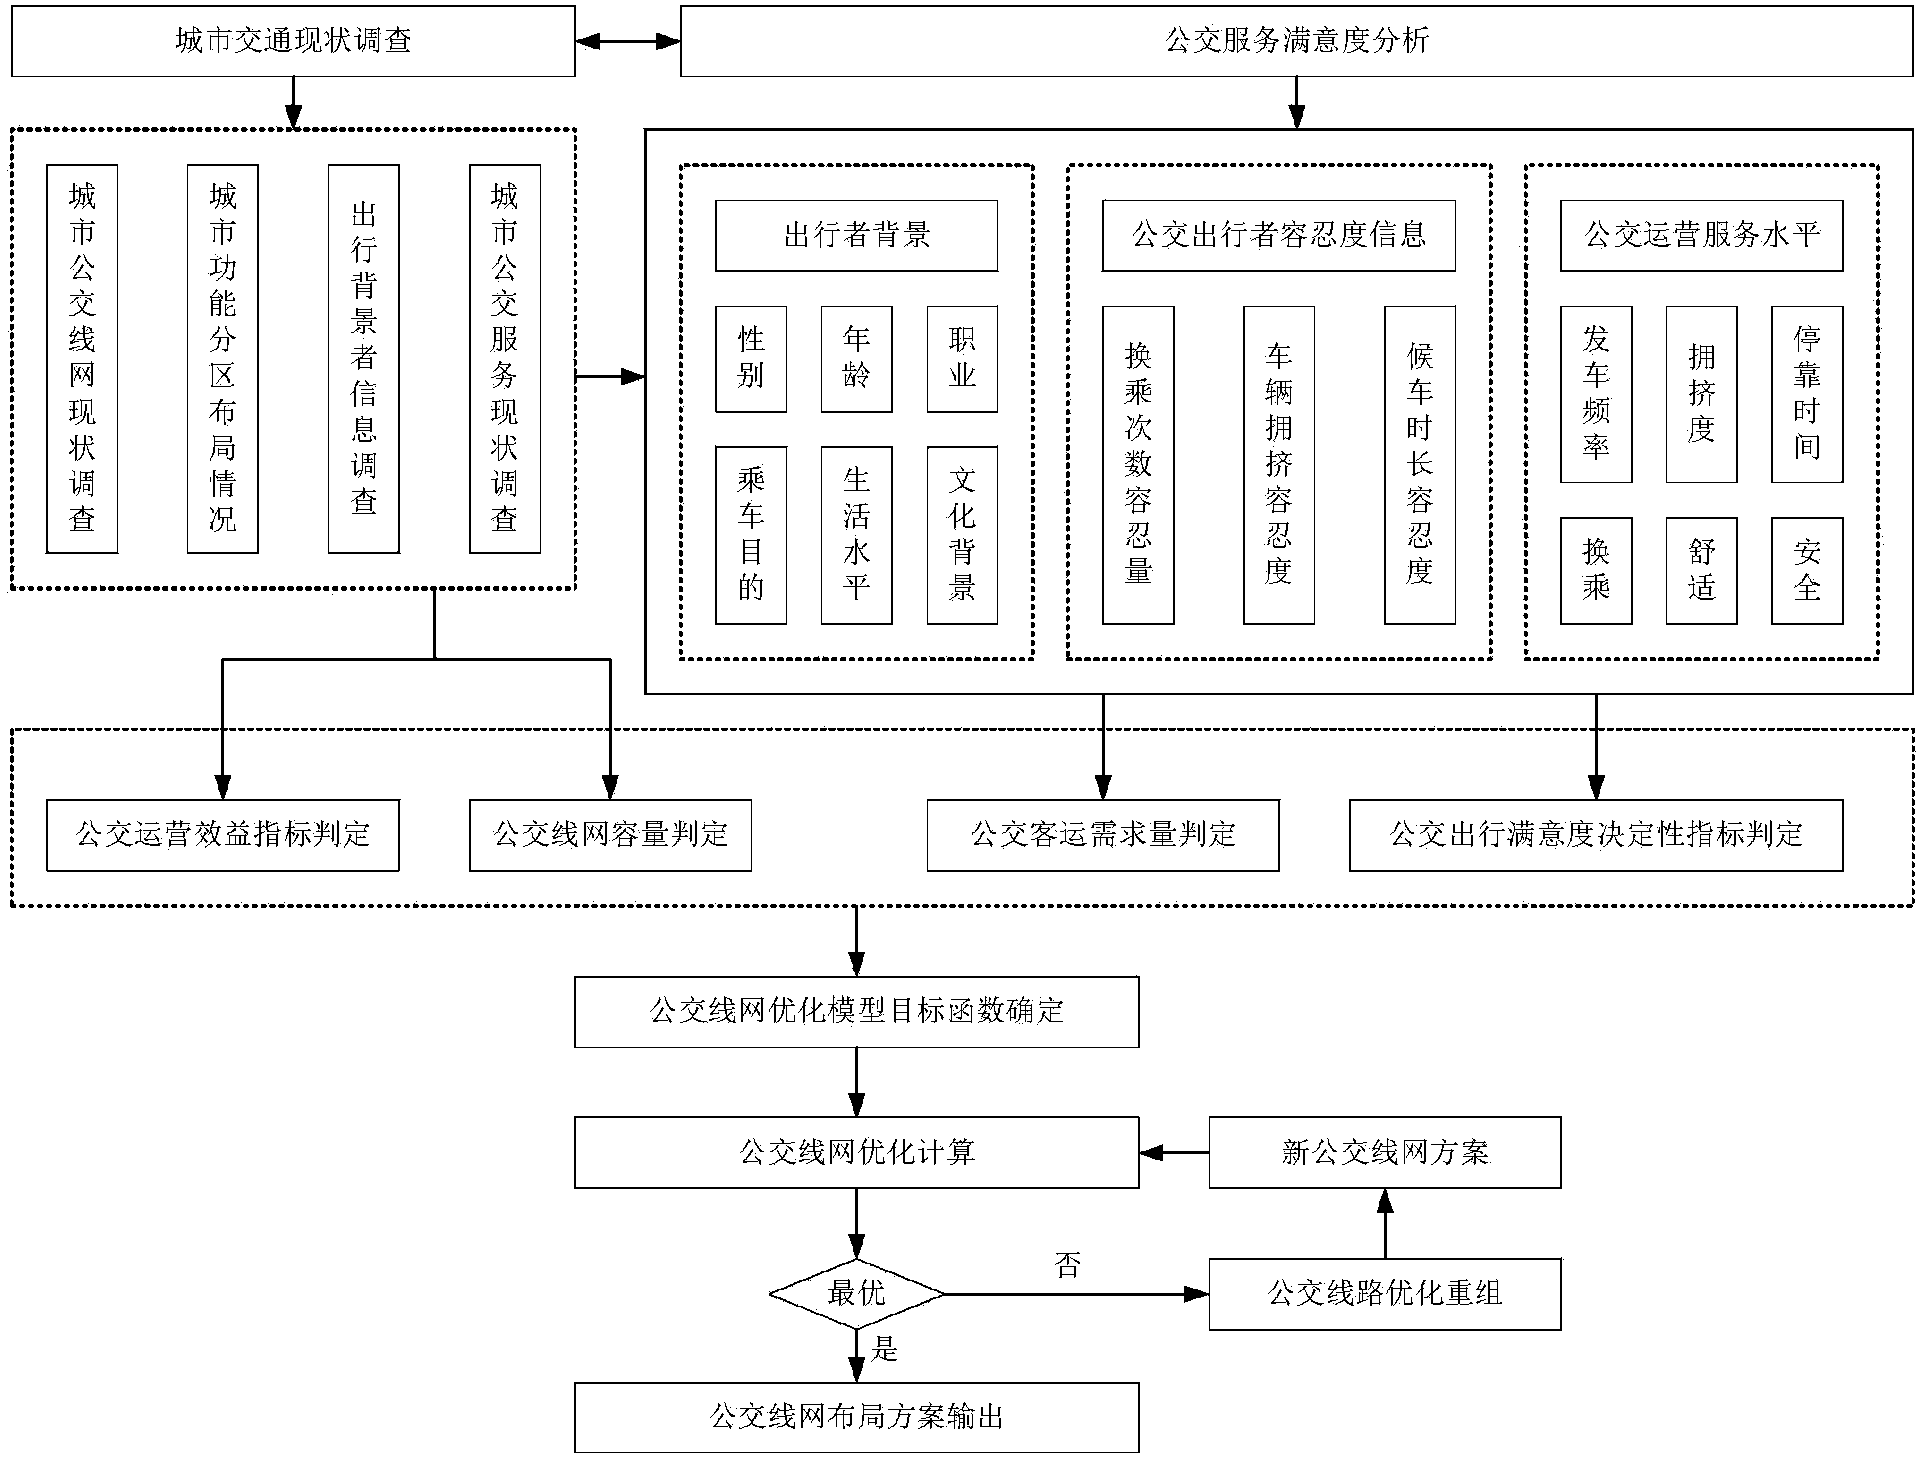 Public-transit-network layout optimization method